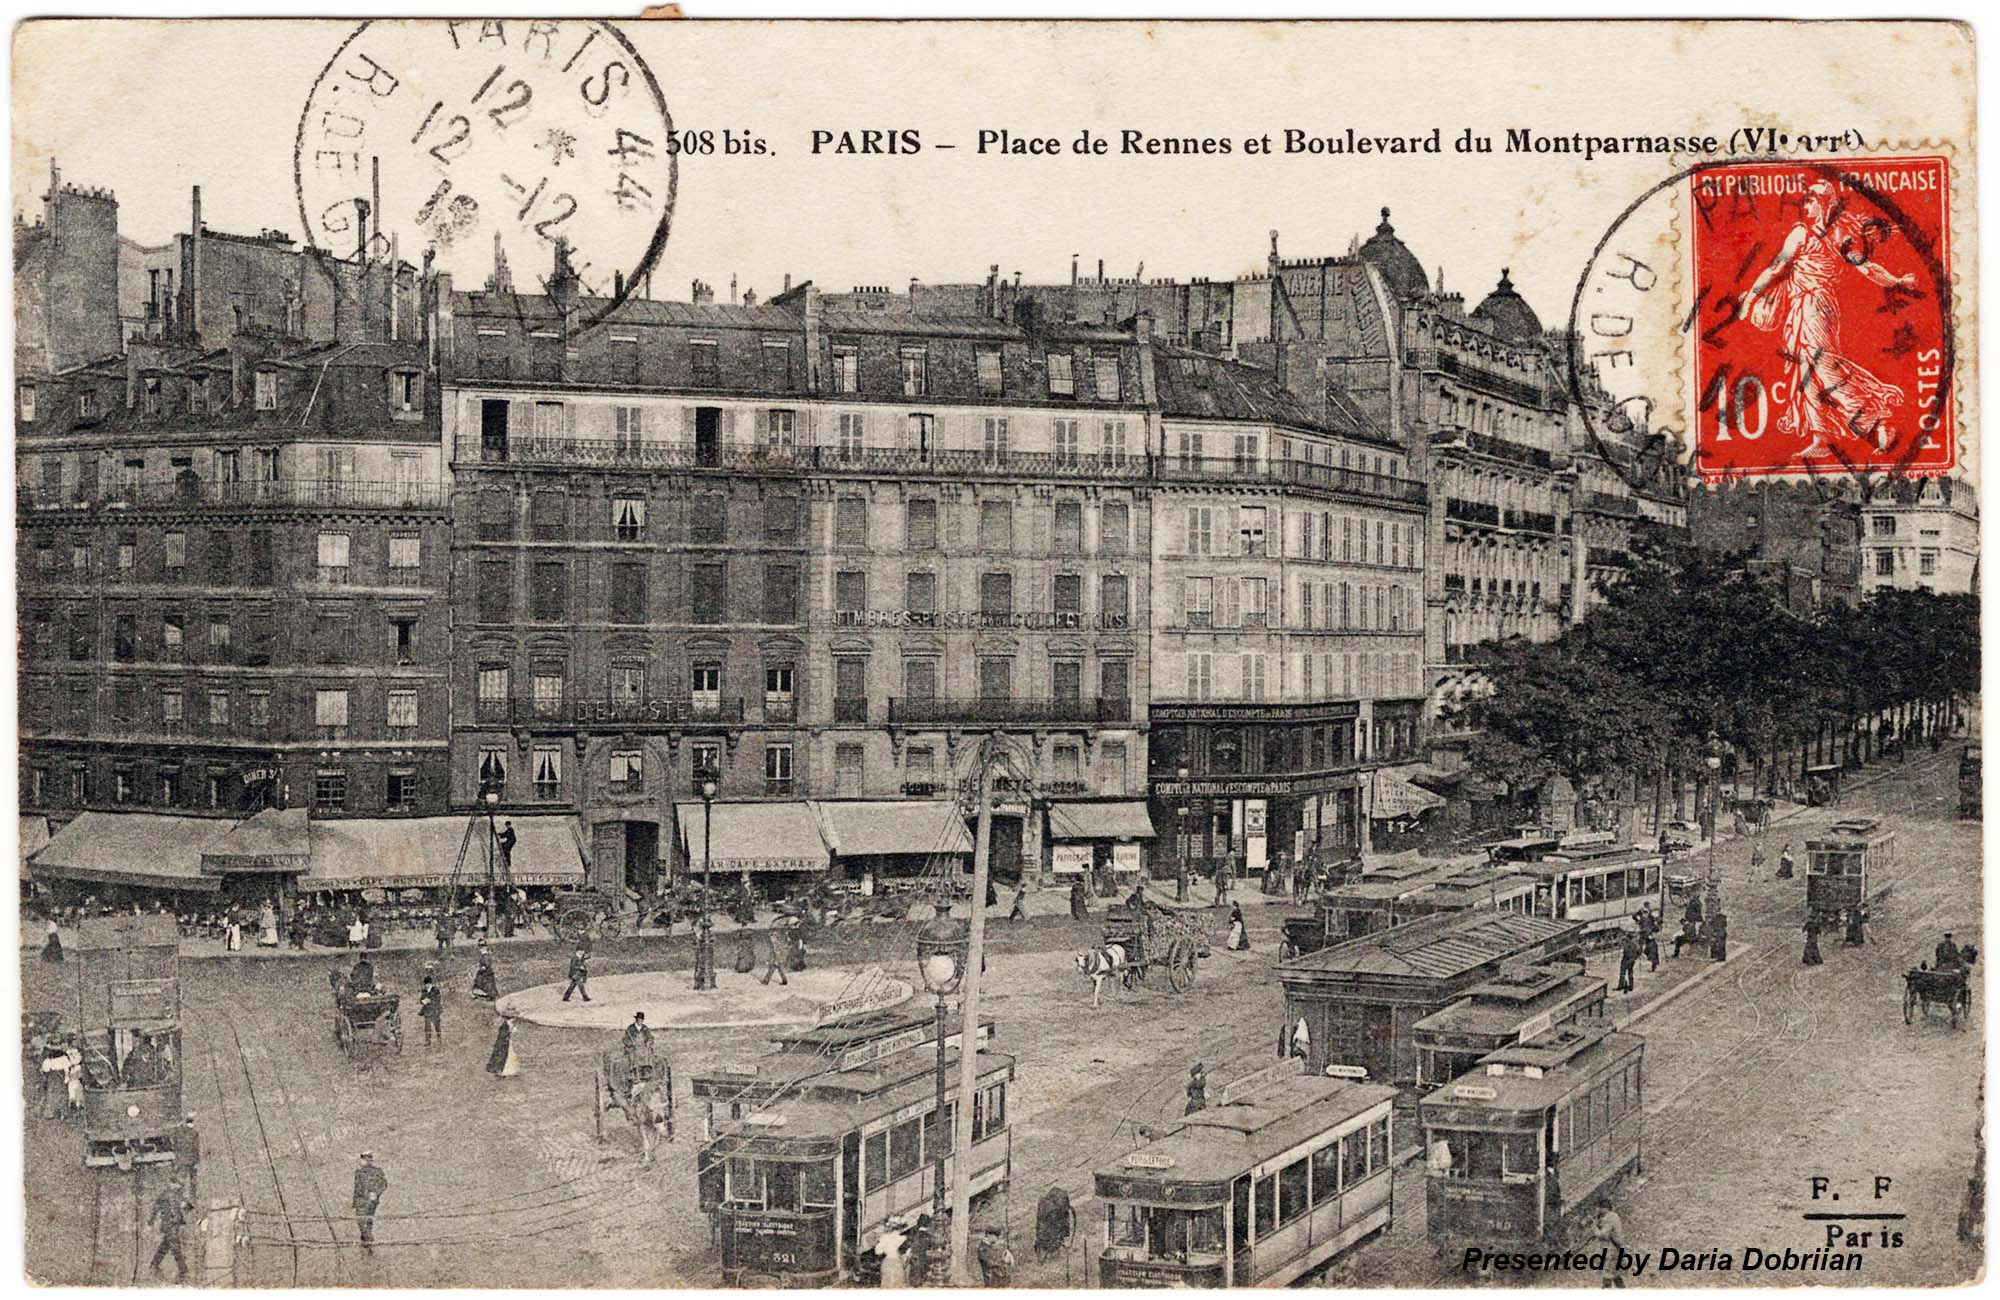 Paris - Place de Rennes et Boulevard du Montparnasse